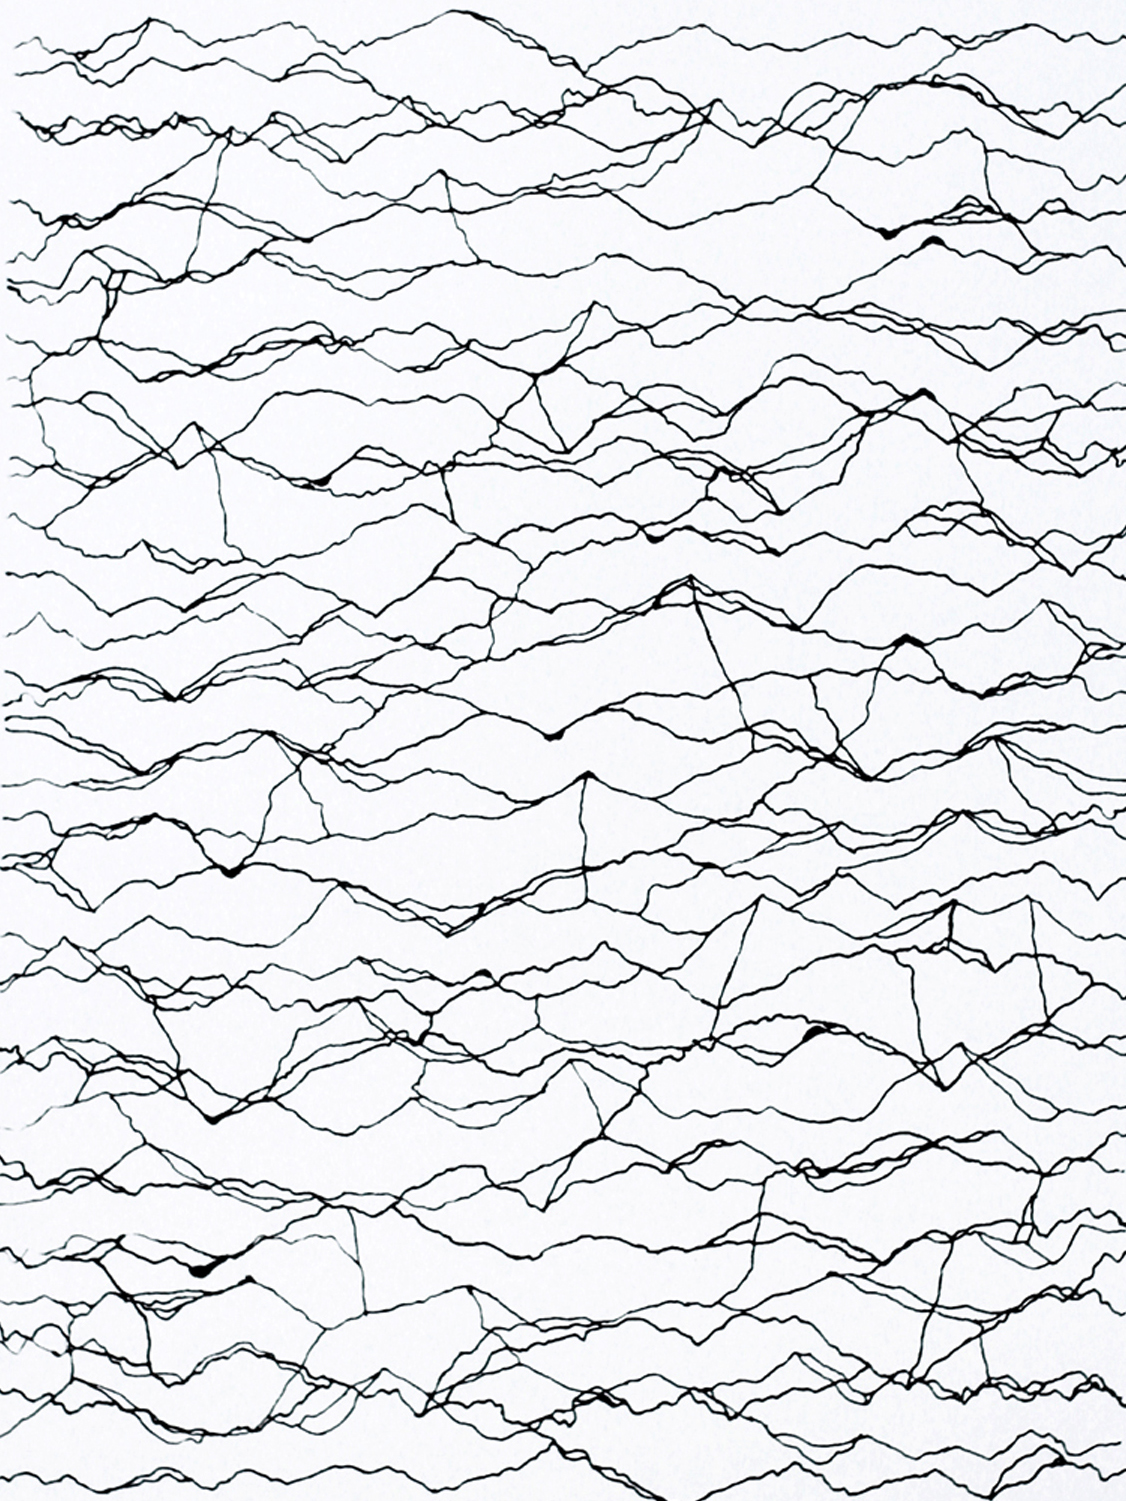 Untitled_Waves_Grey_Edition of 2_48x60cm_Crop_lg.jpg